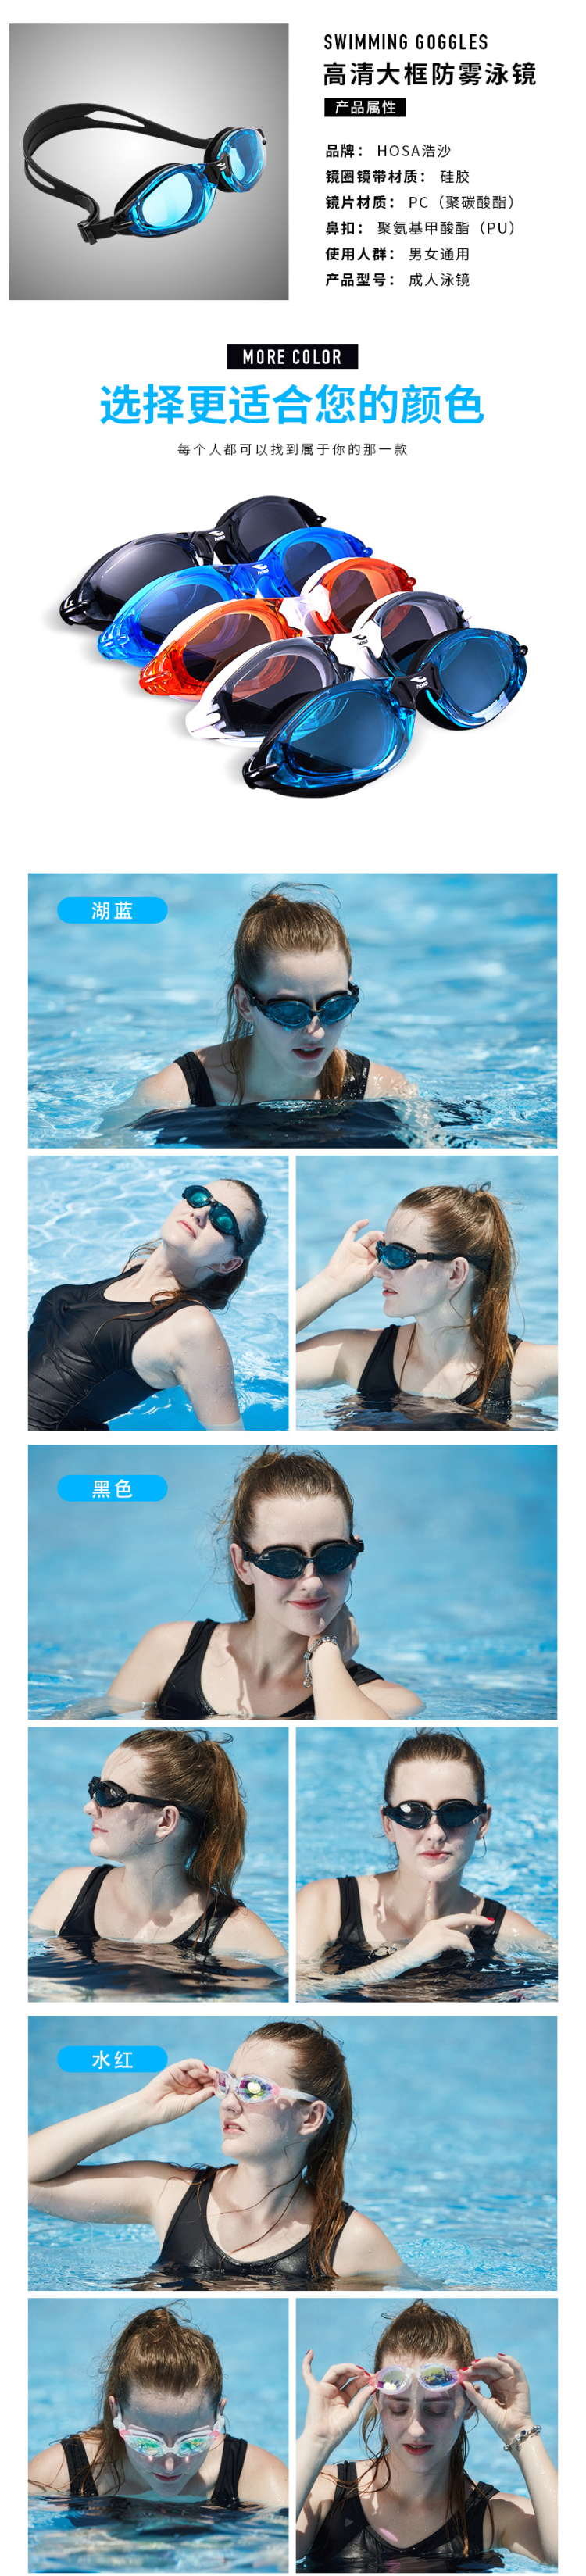 国际泳联合作品牌 浩沙 高清防雾泳镜 图3